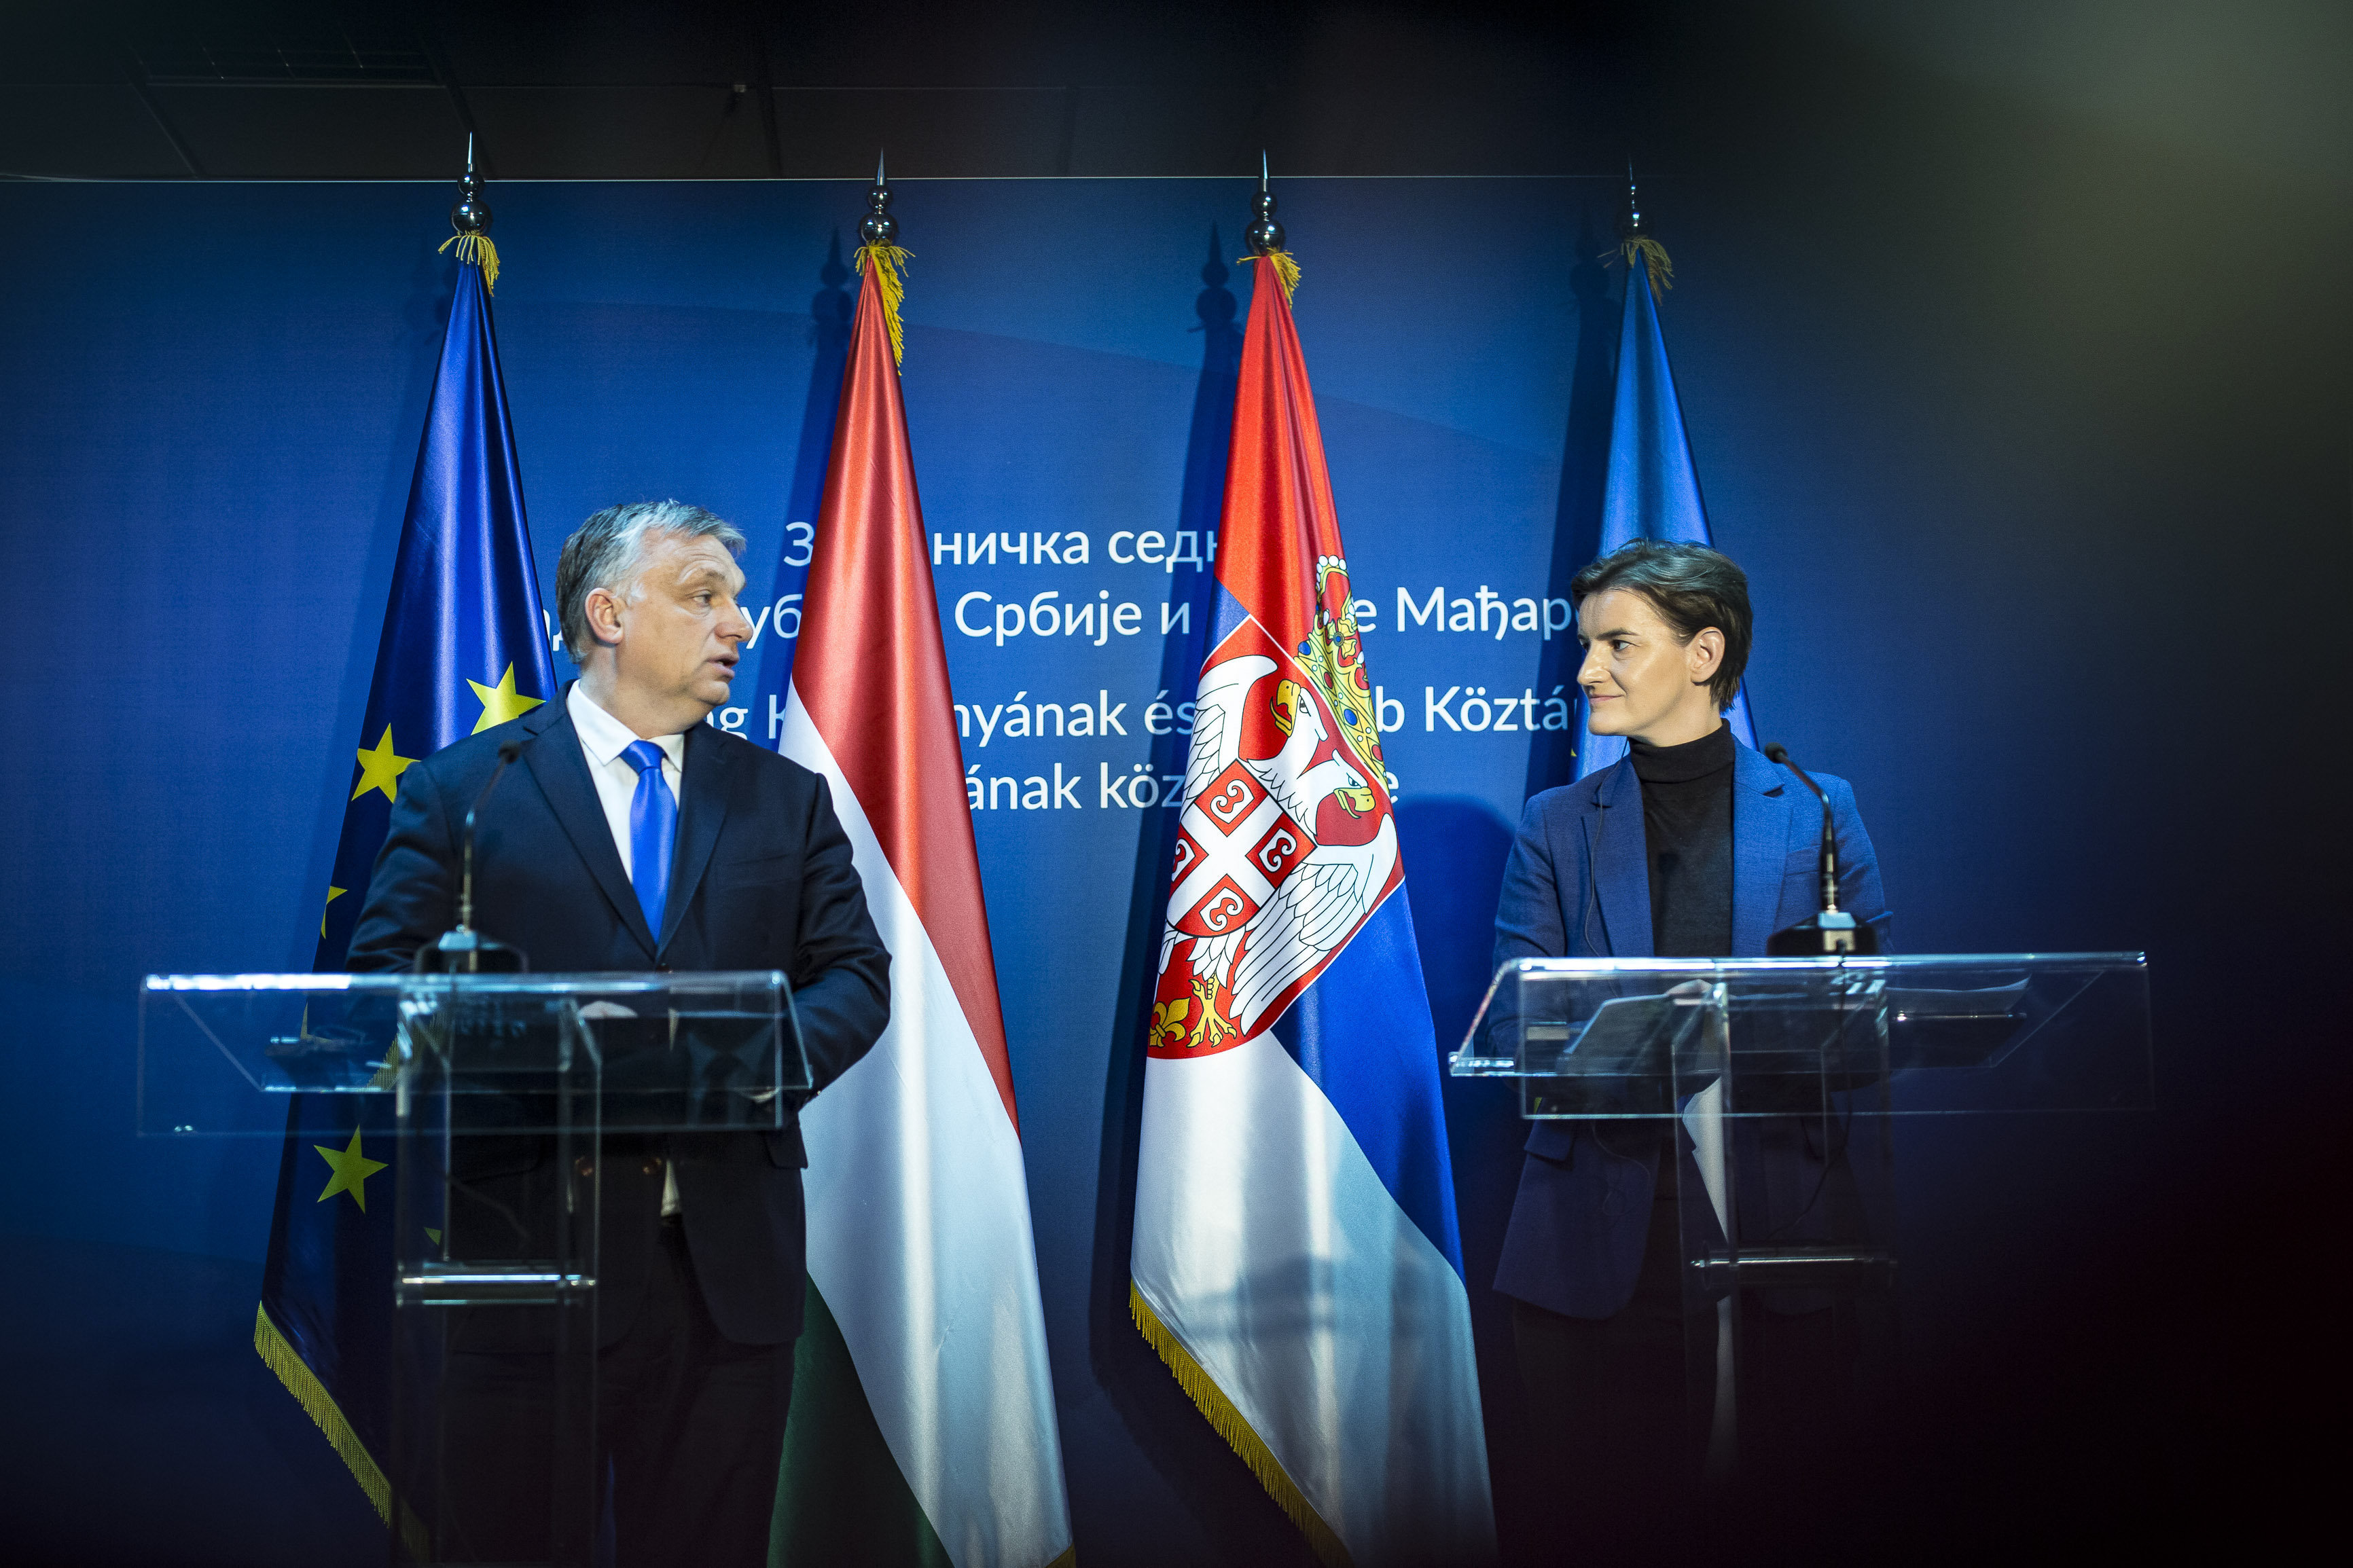 塞爾維亞和匈牙利政府聯席會議在塞爾維亞舉行